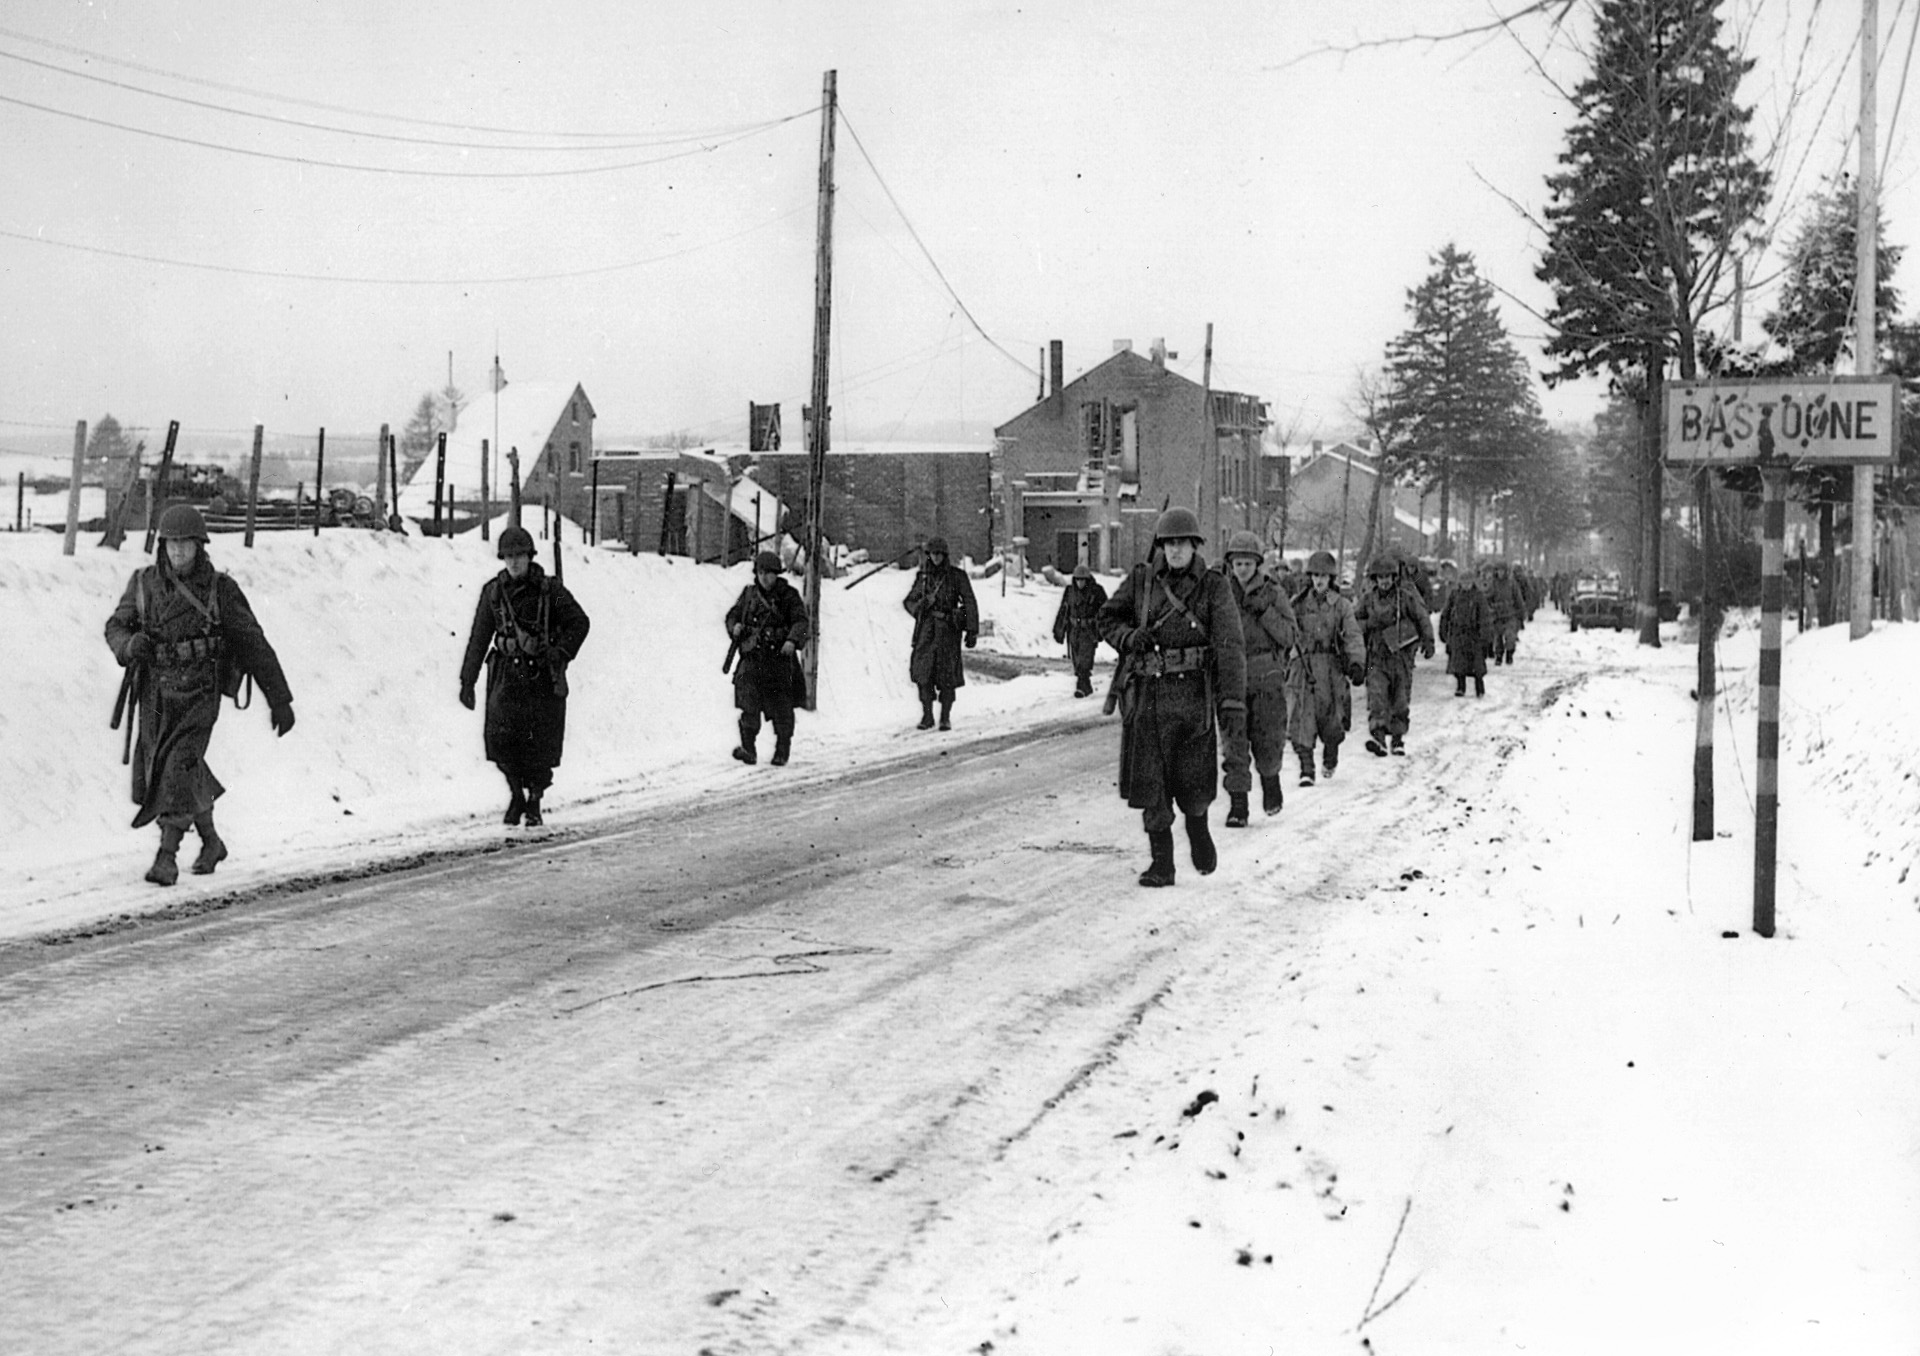 第101空降师的伞兵们在成功保卫巴斯托涅不受德军攻击后，列队离开。唐·马拉基在巴斯通附近的树林里失去了许多朋友。斯基普·穆克的死一直困扰着他的余生。